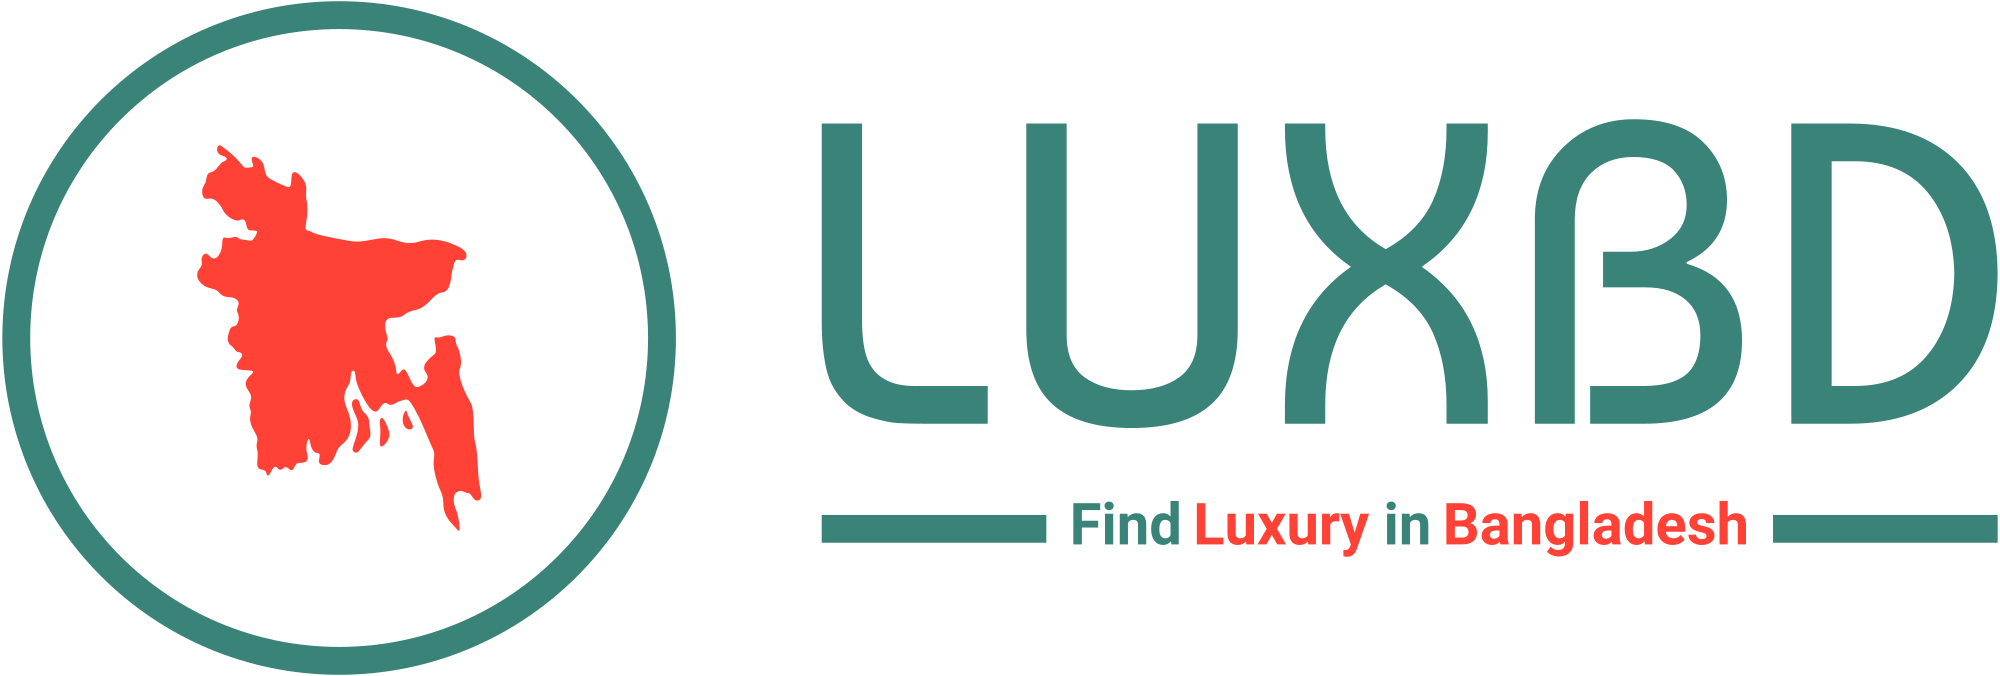 LuxBD - Find Luxury in Bangladesh